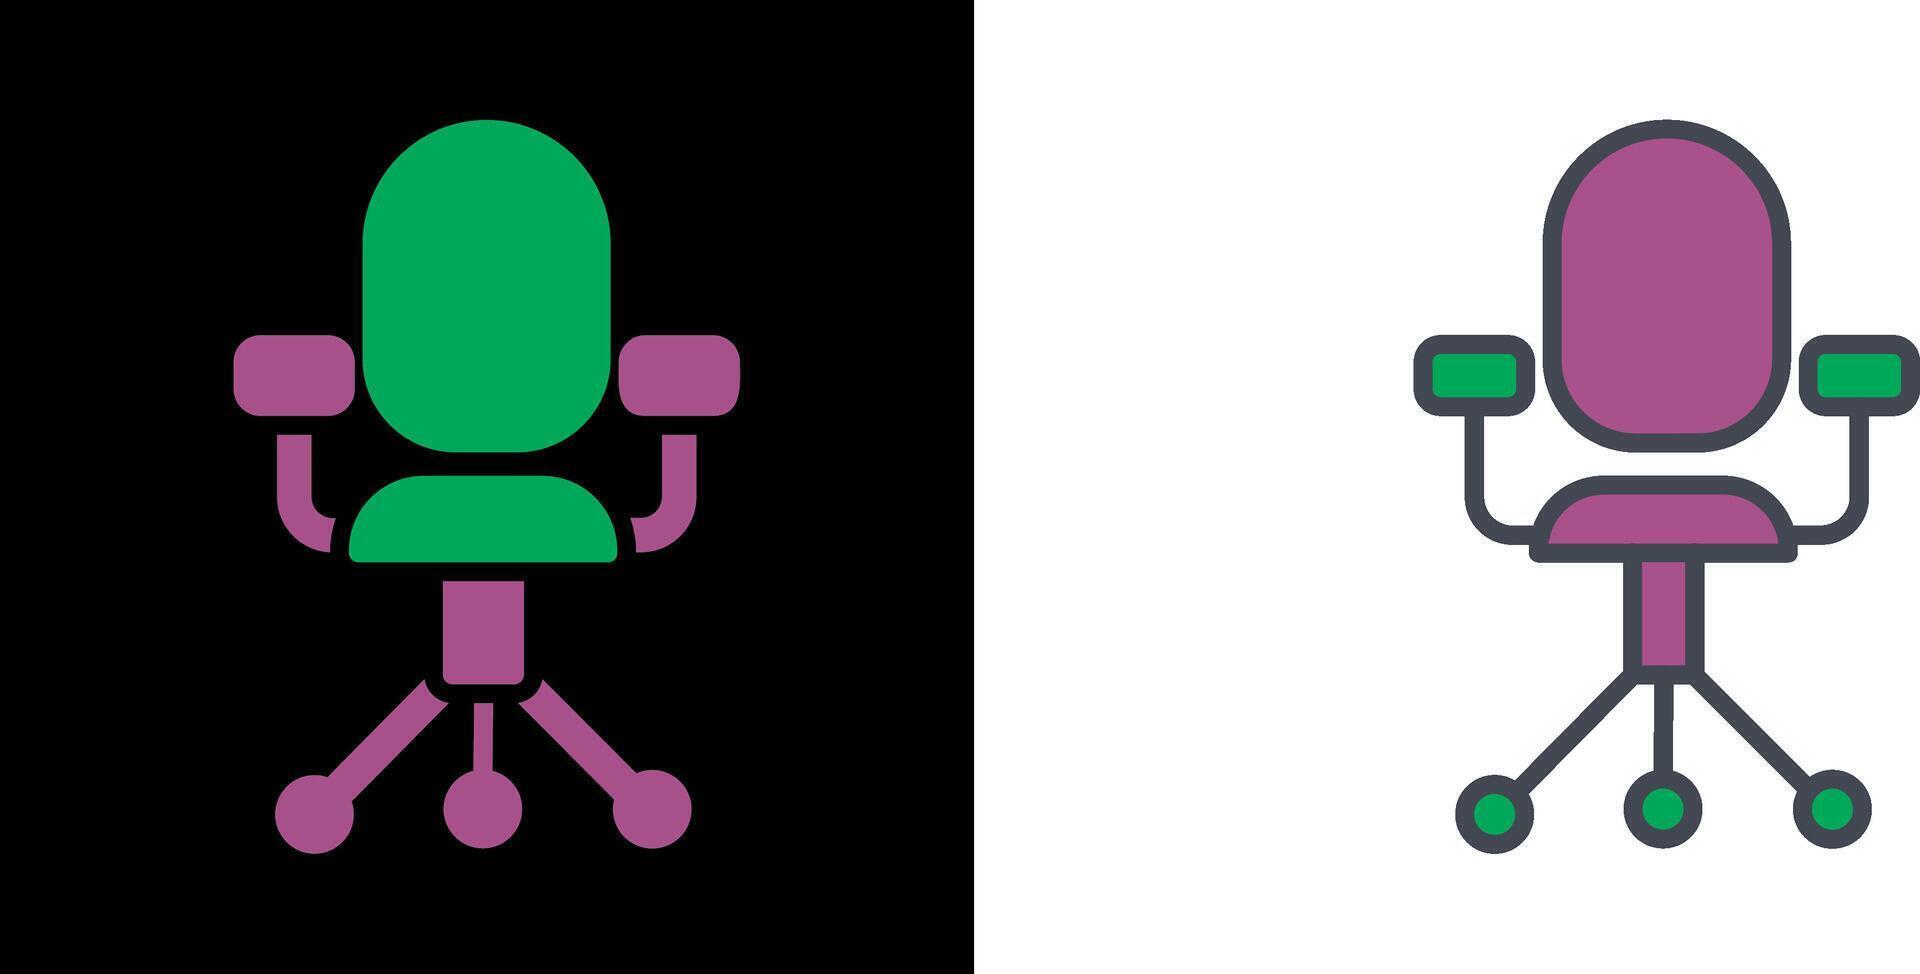 Chair Icon Design vector